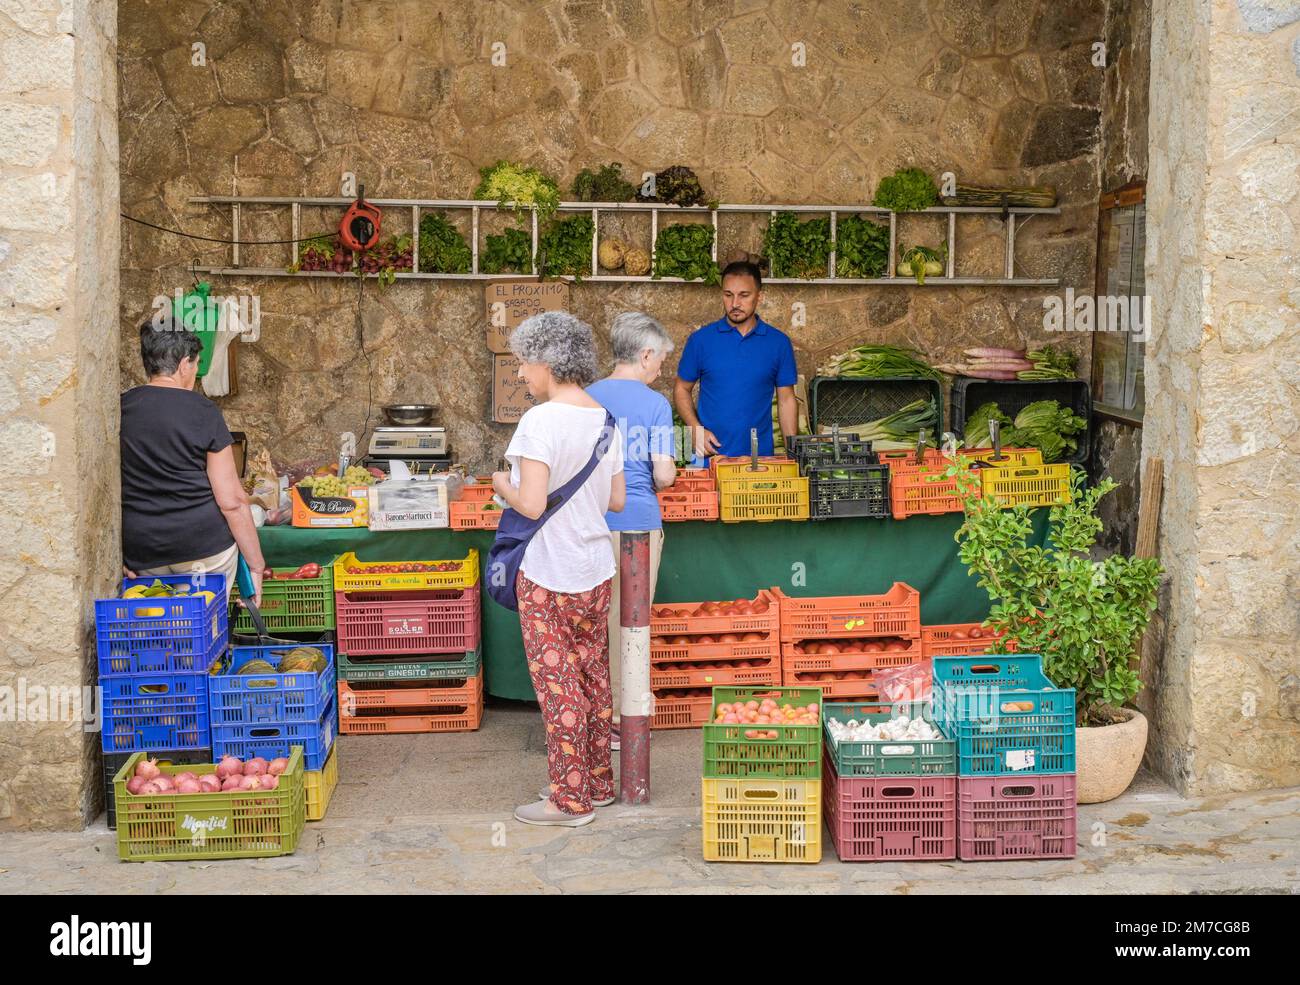 Verkaufstand Obst und Gemüse, Estellencs, Mallorca, Spanien Foto Stock